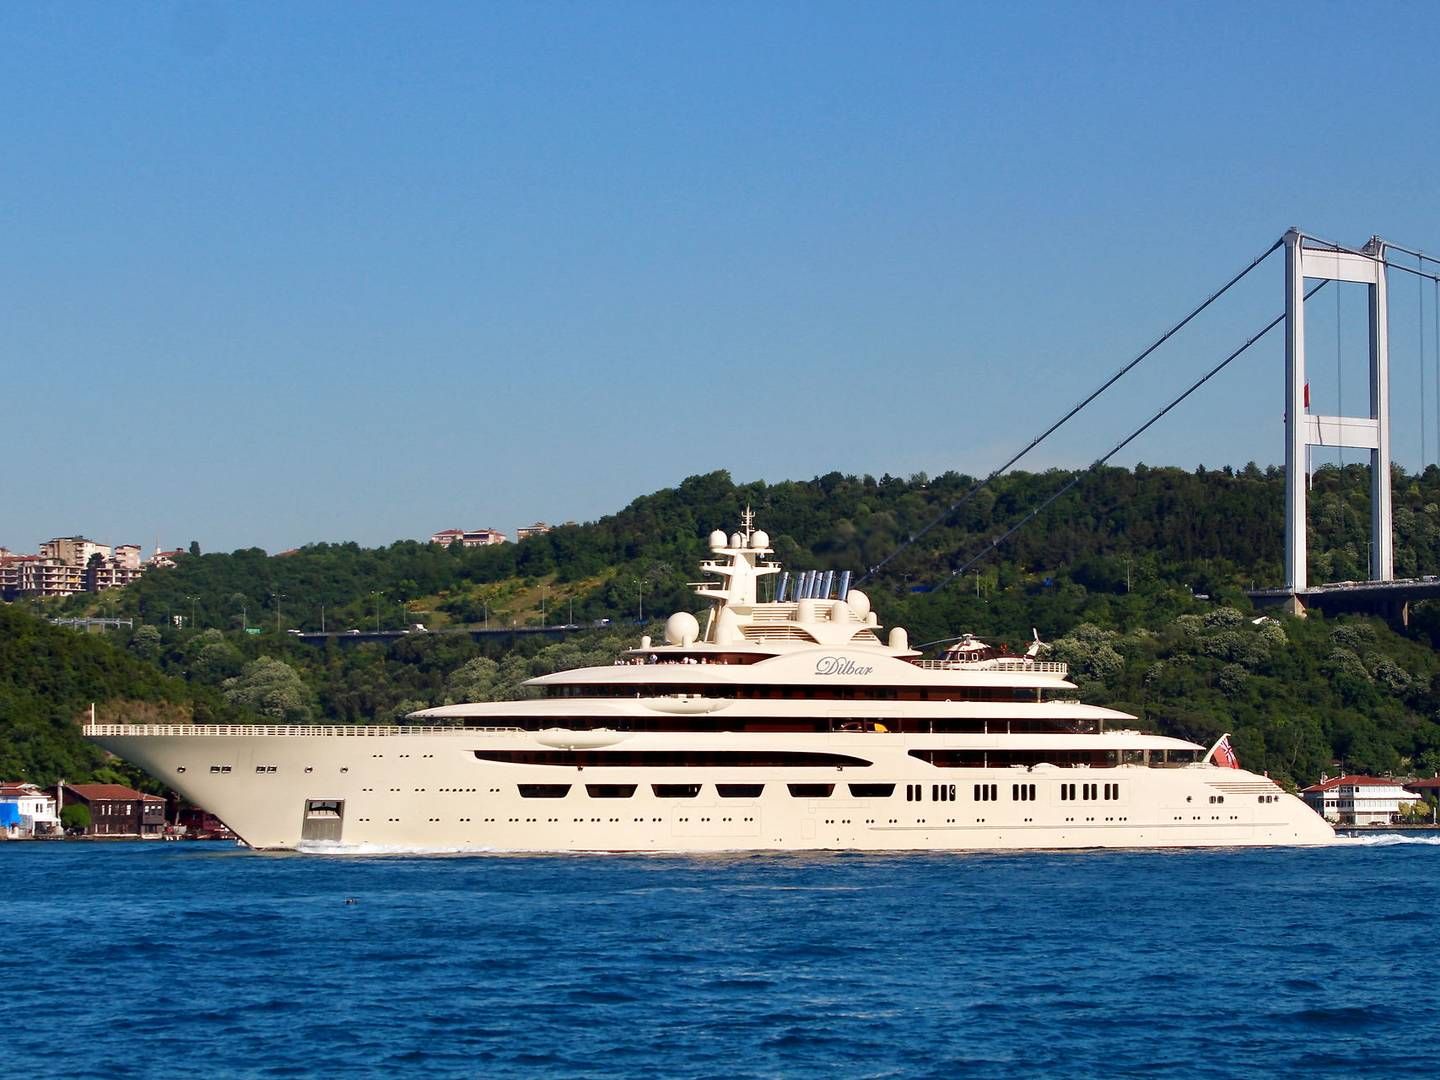 Den beslaglagte yacht Dilbar anslås at have en værdi på 4 mia. kr. Arkivfoto: Yoruk Isik/Reuters/Ritzau Scanpix